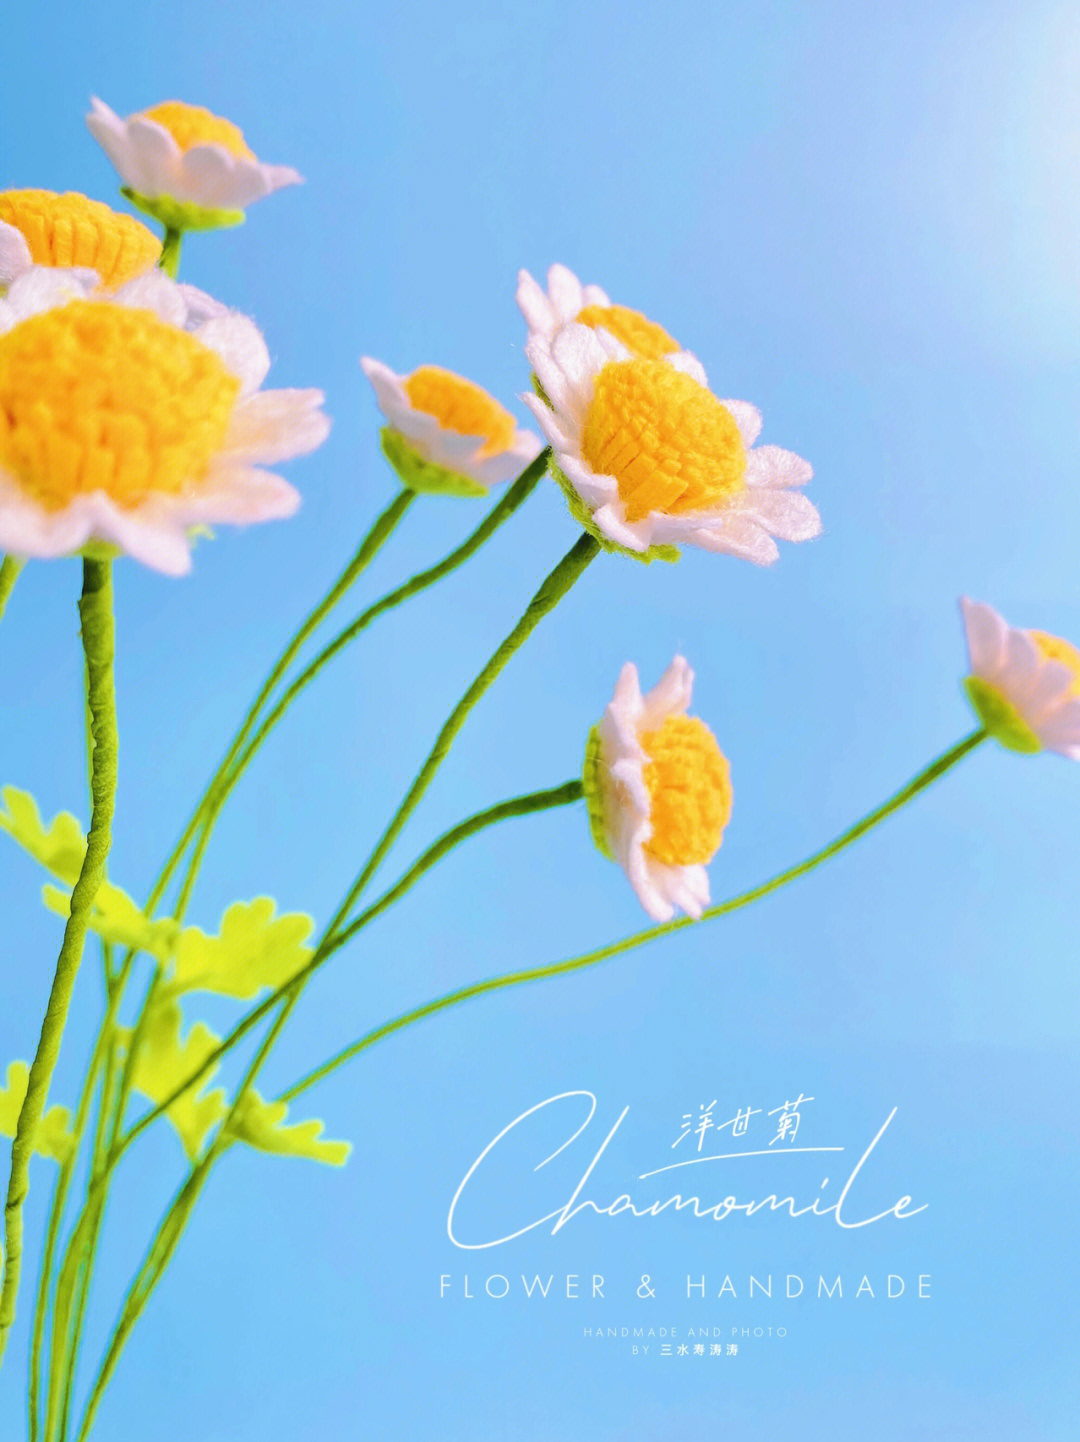 chamomile 洋甘菊98向阳开白花,兩打也不慌98花诗:待到秋来九月八